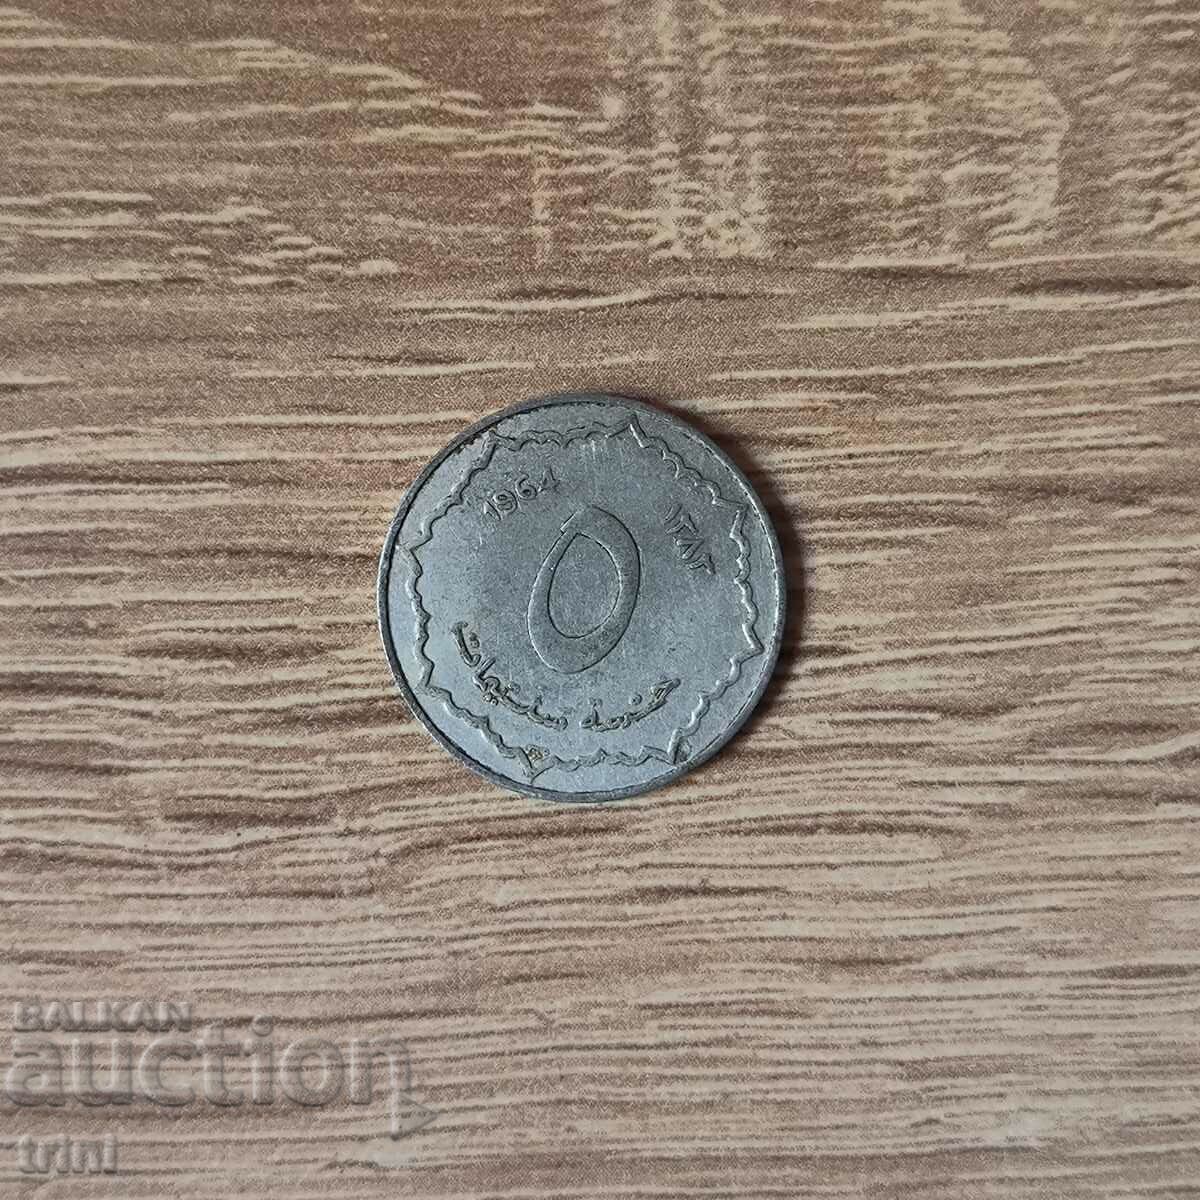 Algeria 5 centimeters 1964